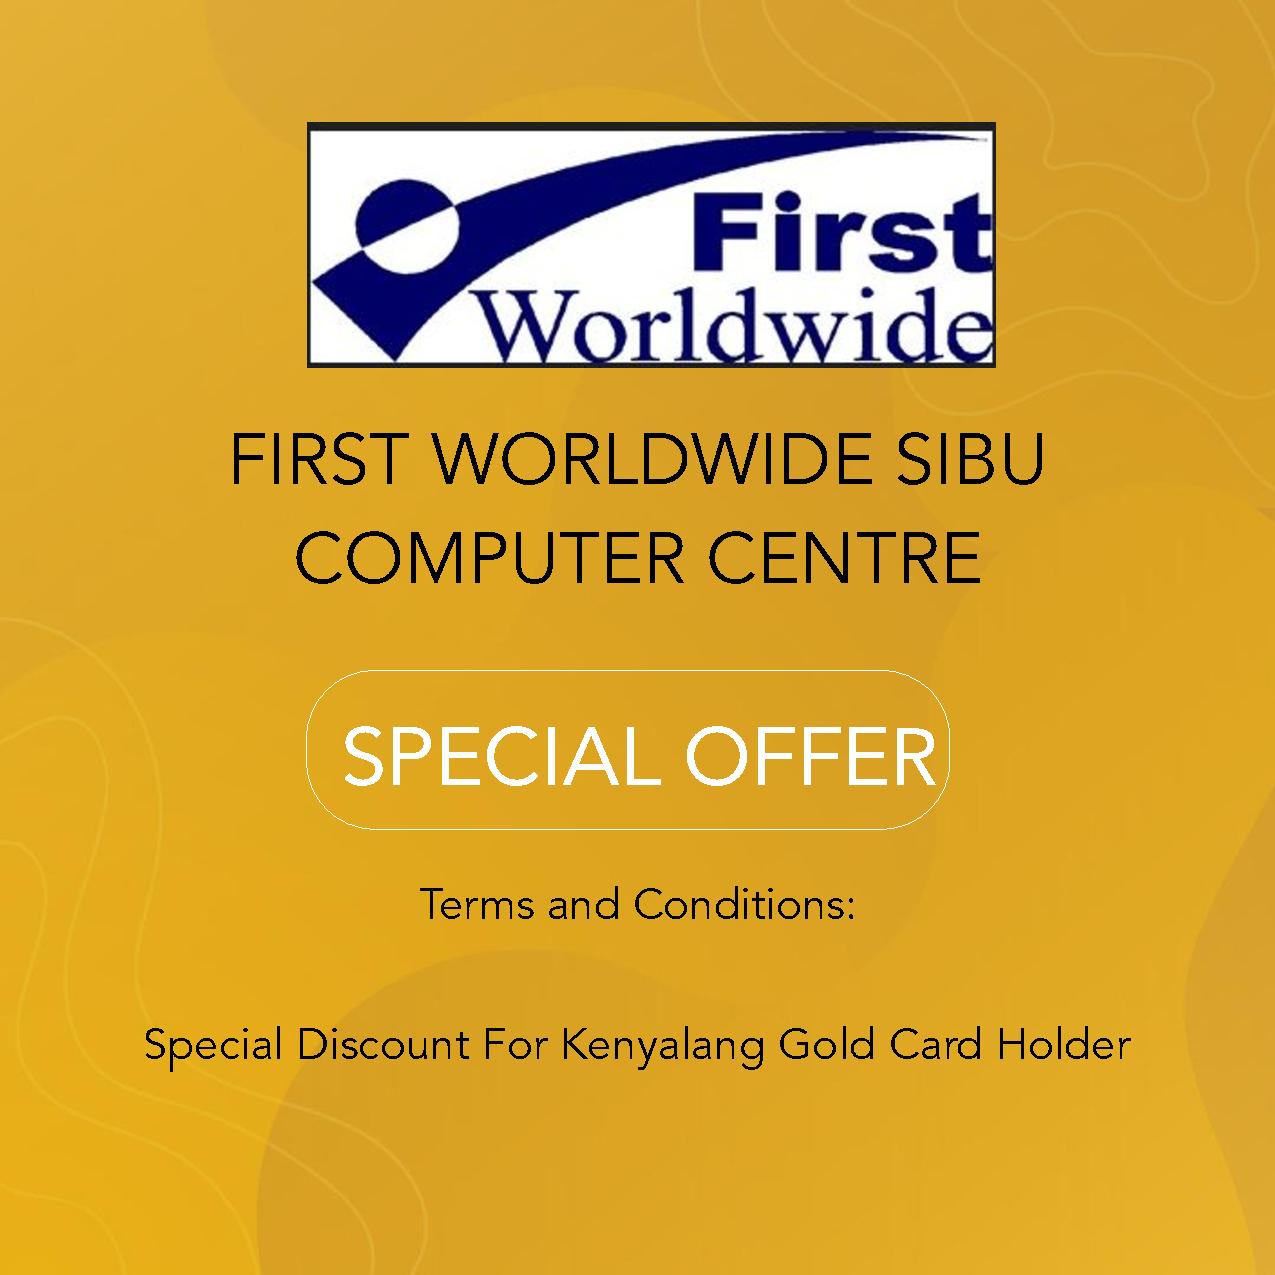 FIRST WORLDWIDE SIBU COMPUTER CENTRE